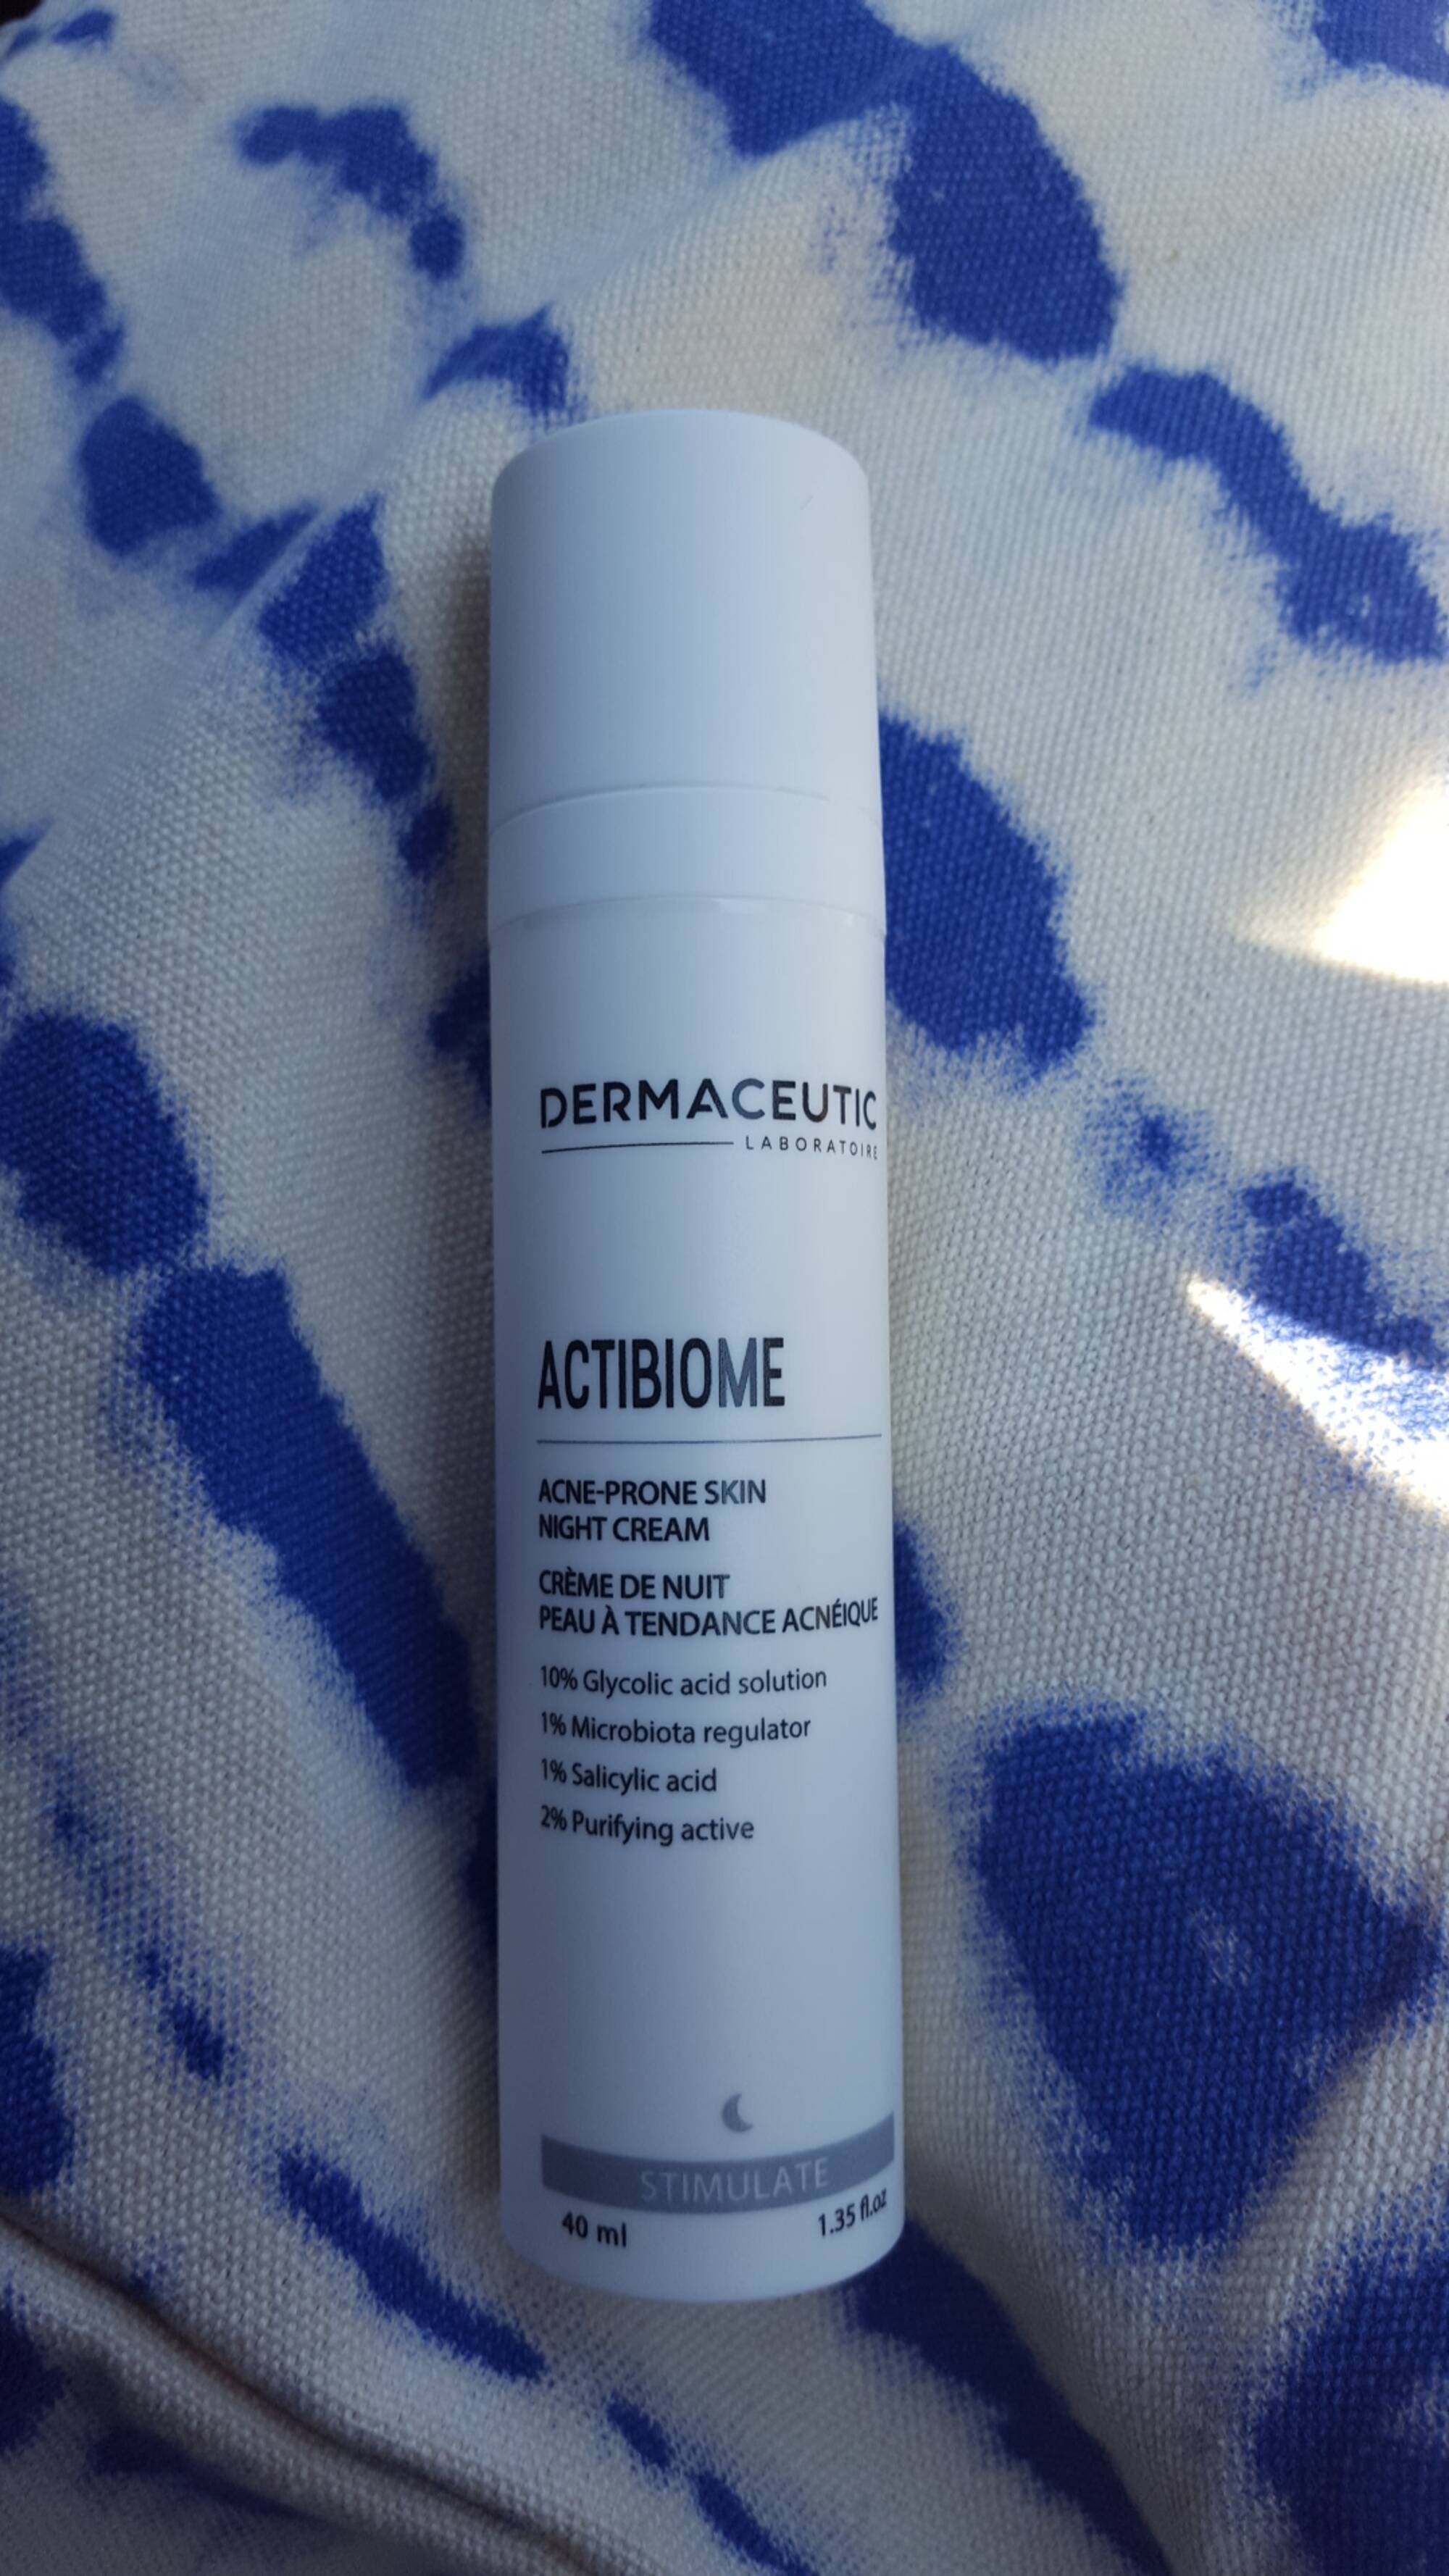 DERMACEUTIC - Actibiome - Crème de nuit peau à tendance acnéique